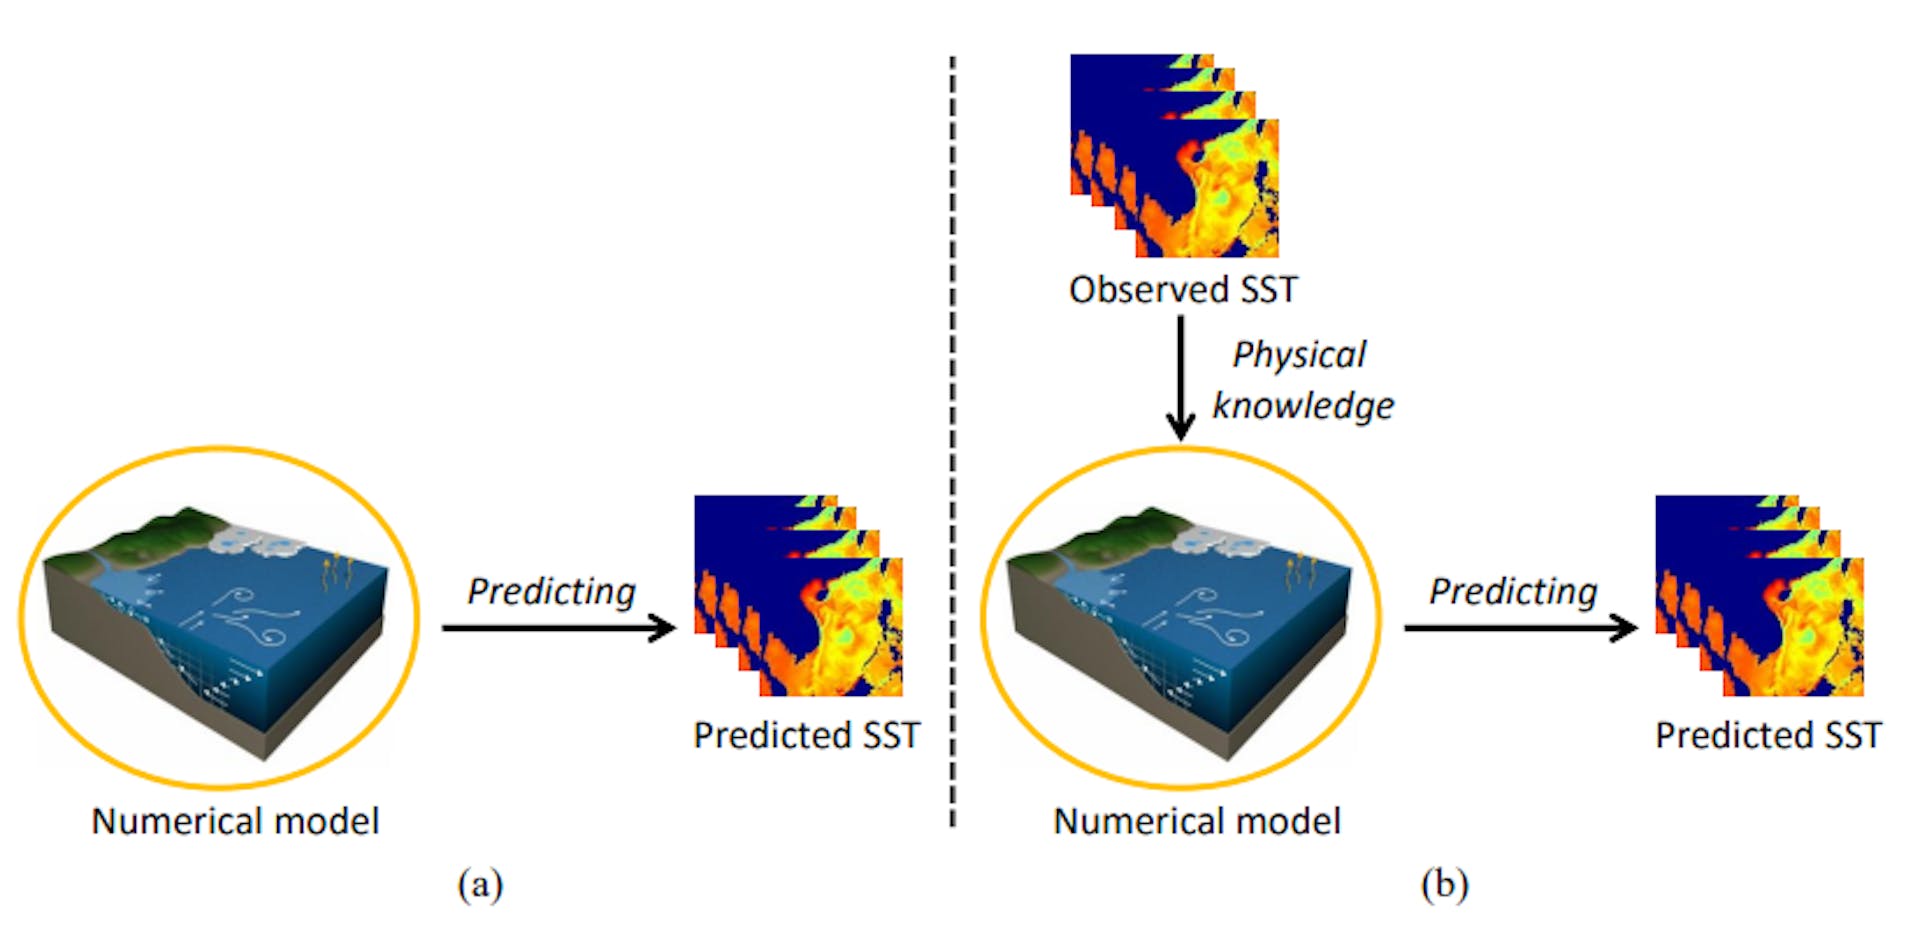 图 1. 数值模型与所提海面温度 (SST) 预测方法的概念比较。(a) 数值模型。(b) 所提出的 SST 预测方法。生成对抗网络用于将历史观测数据的物理知识转移到数值模型，从而提高了 SST 预测性能。